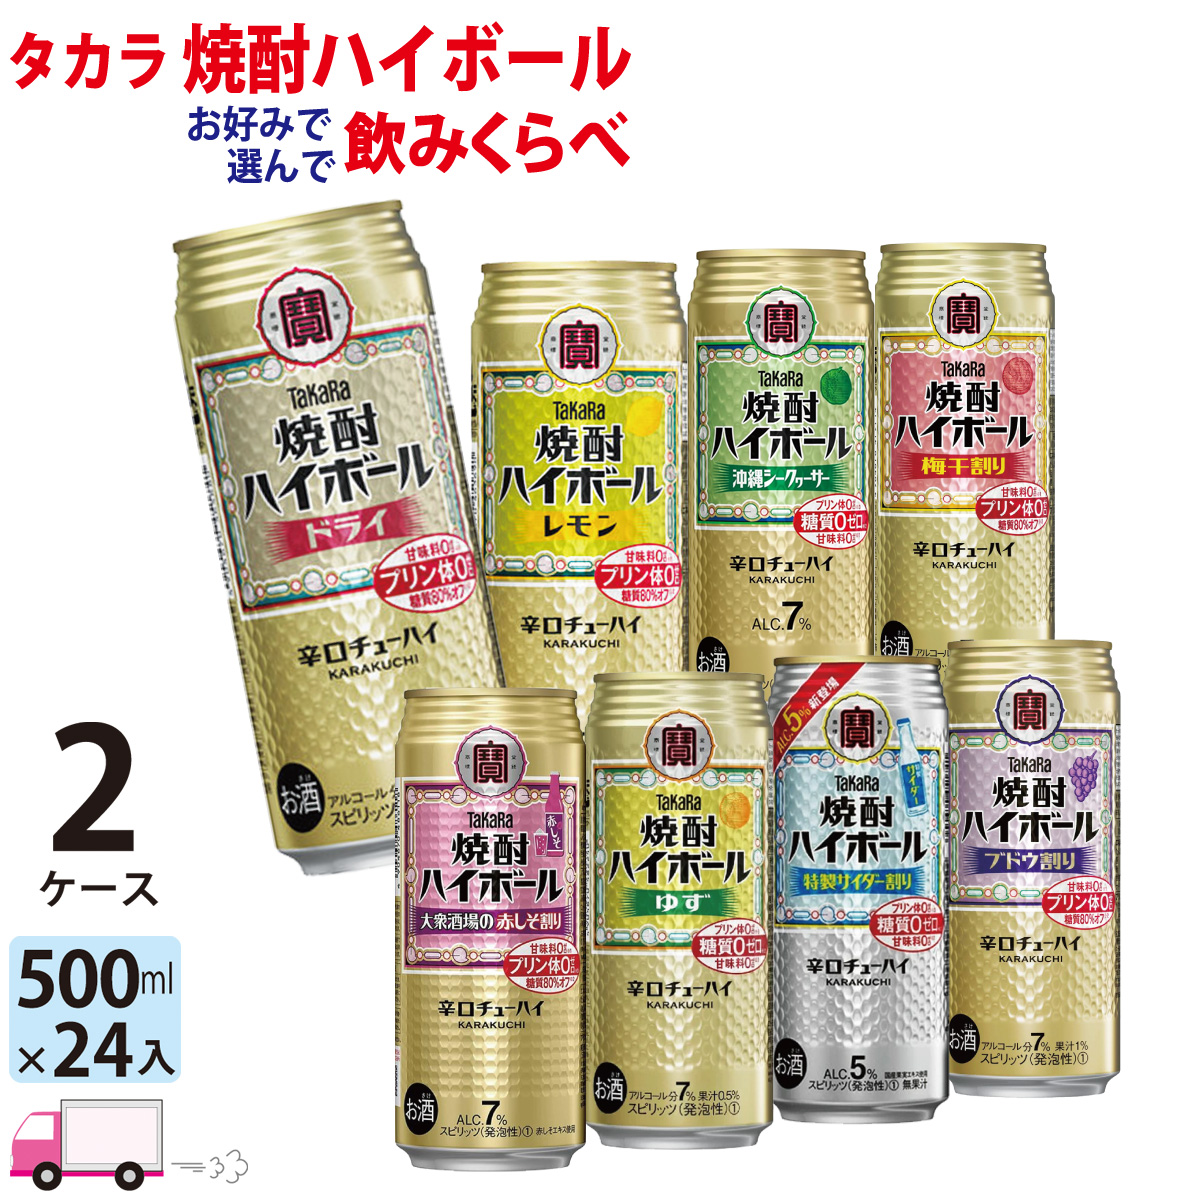 楽天市場 送料無料 宝 Takara タカラ 焼酎ハイボール よりどり選べる 500ml缶 2ケース 48本 わいわい卓杯便